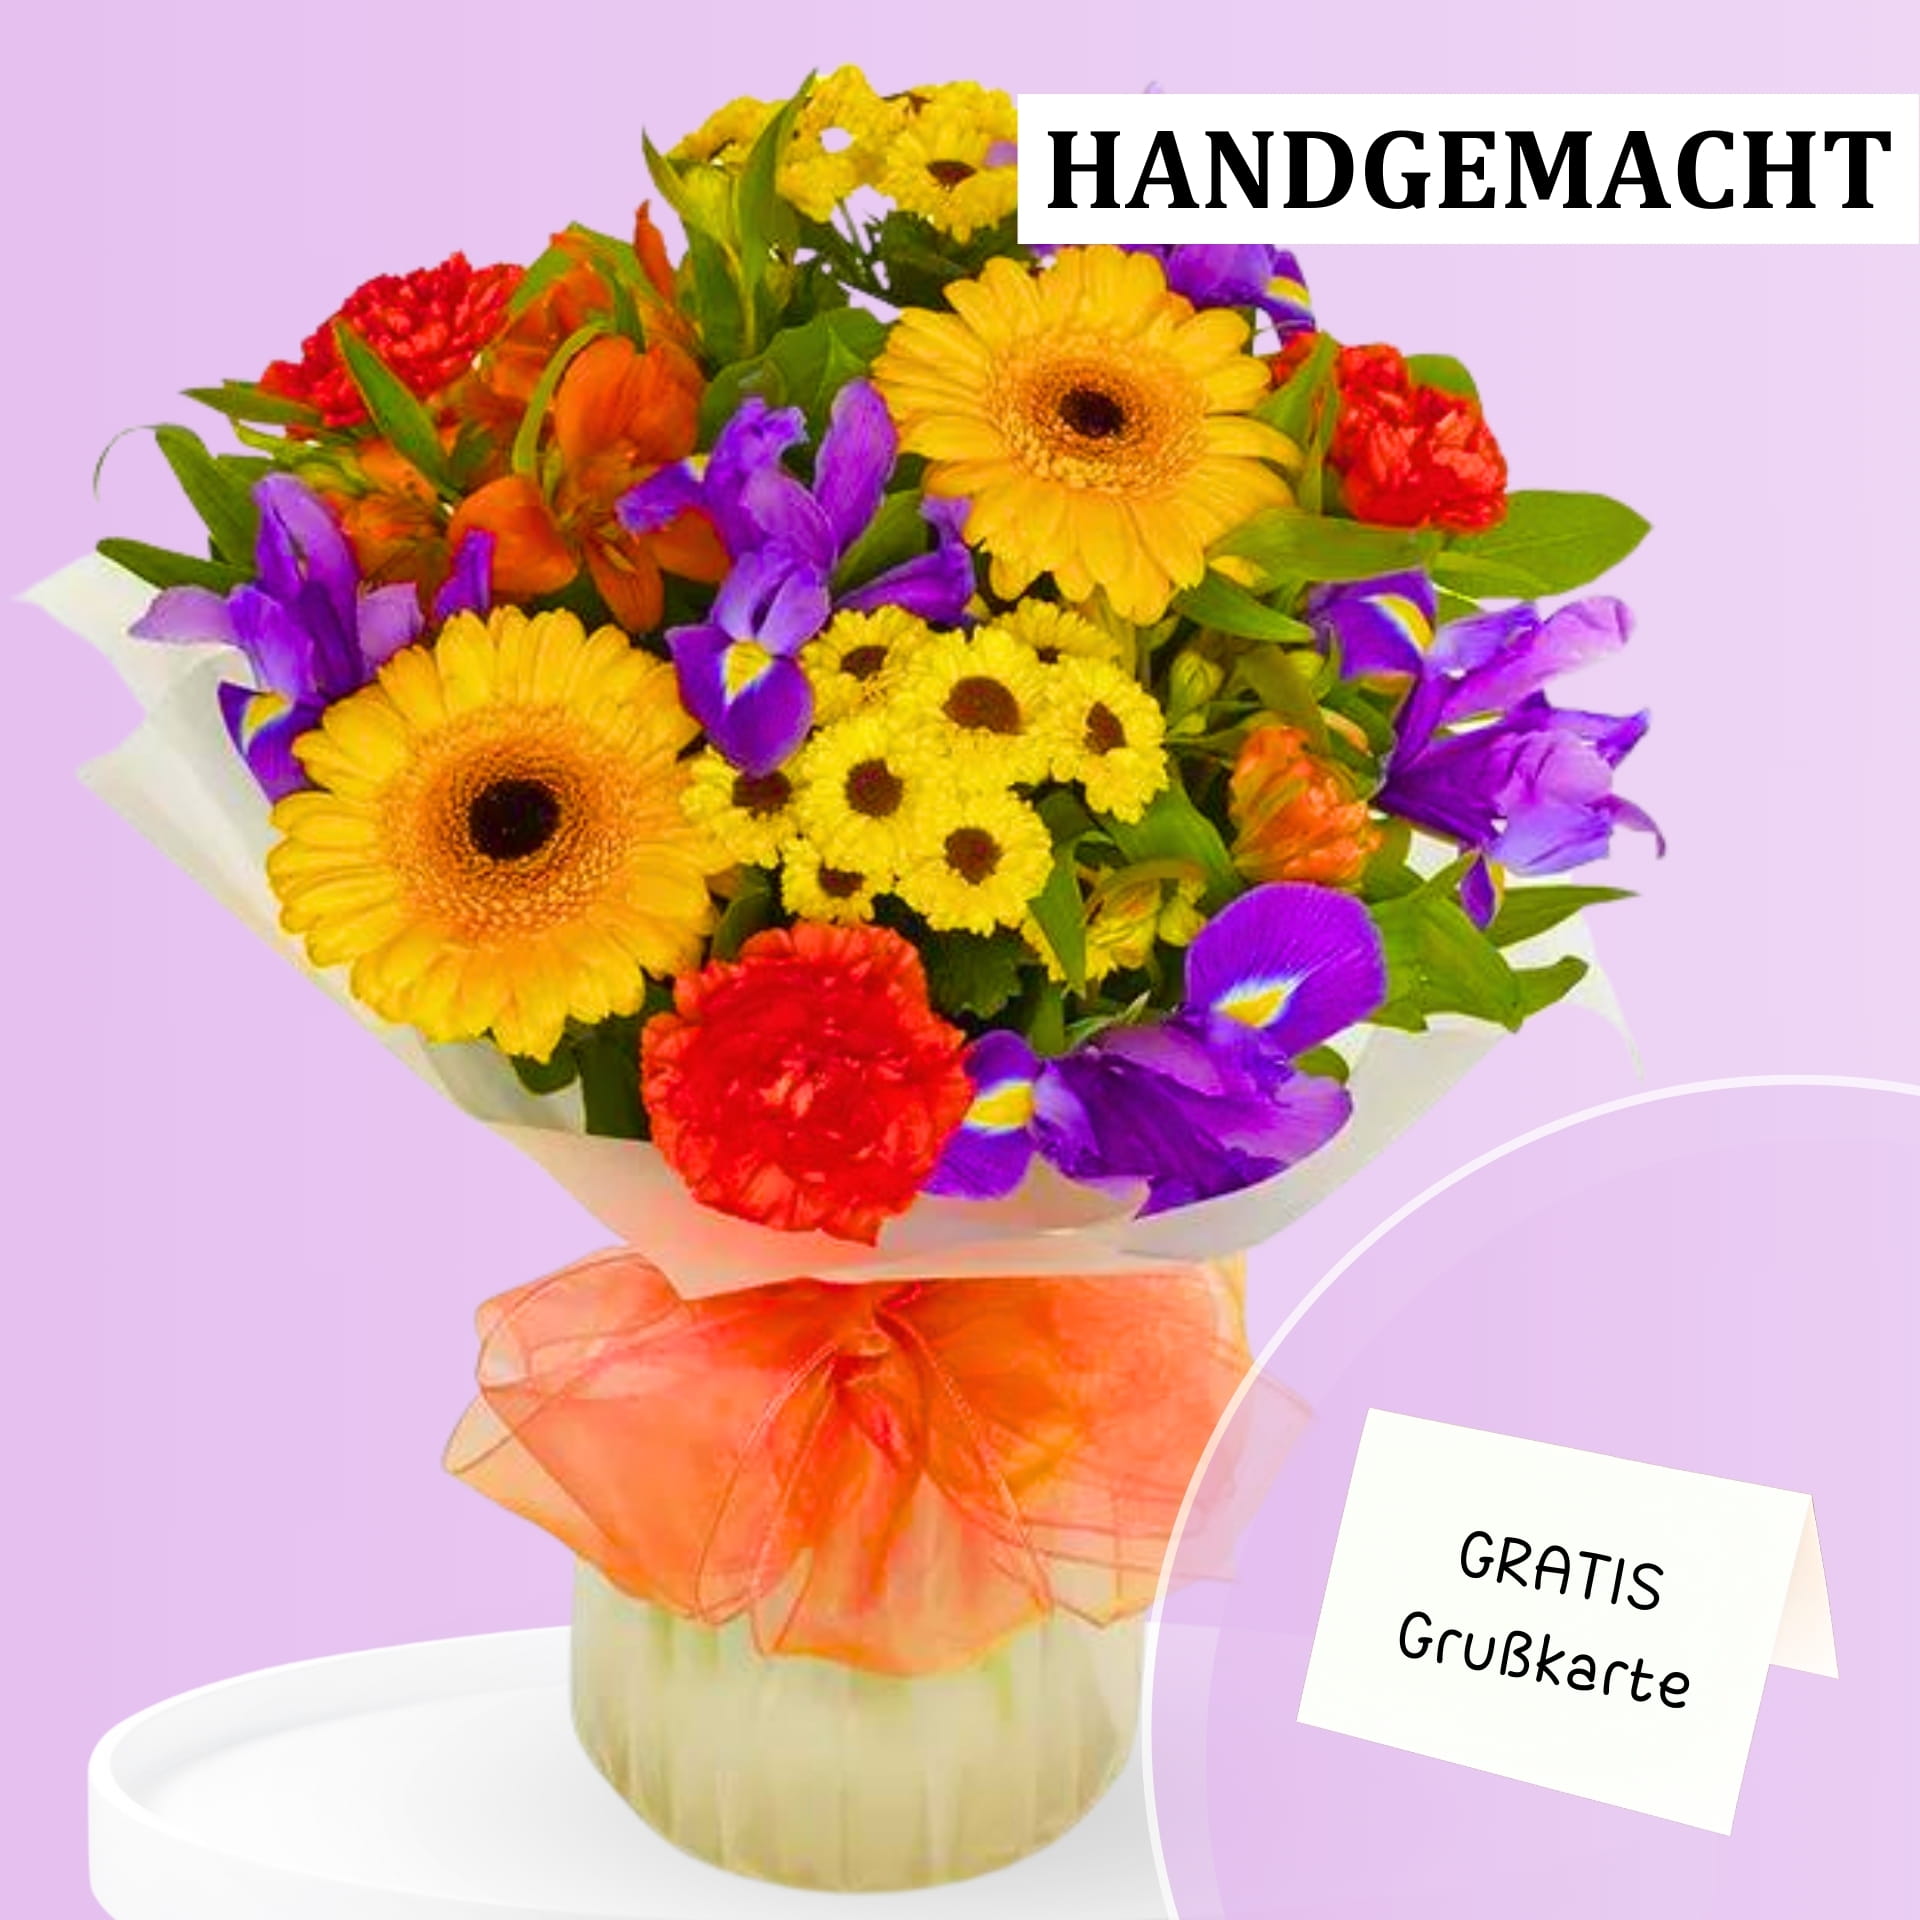  Bunter Blumenstrauß aus verschiedenen farbigen Blüten, verpackt mit einer orangenen Schleife. Text auf dem Bild: "HANDGEMACHT" und "GRATIS Grußkarte".